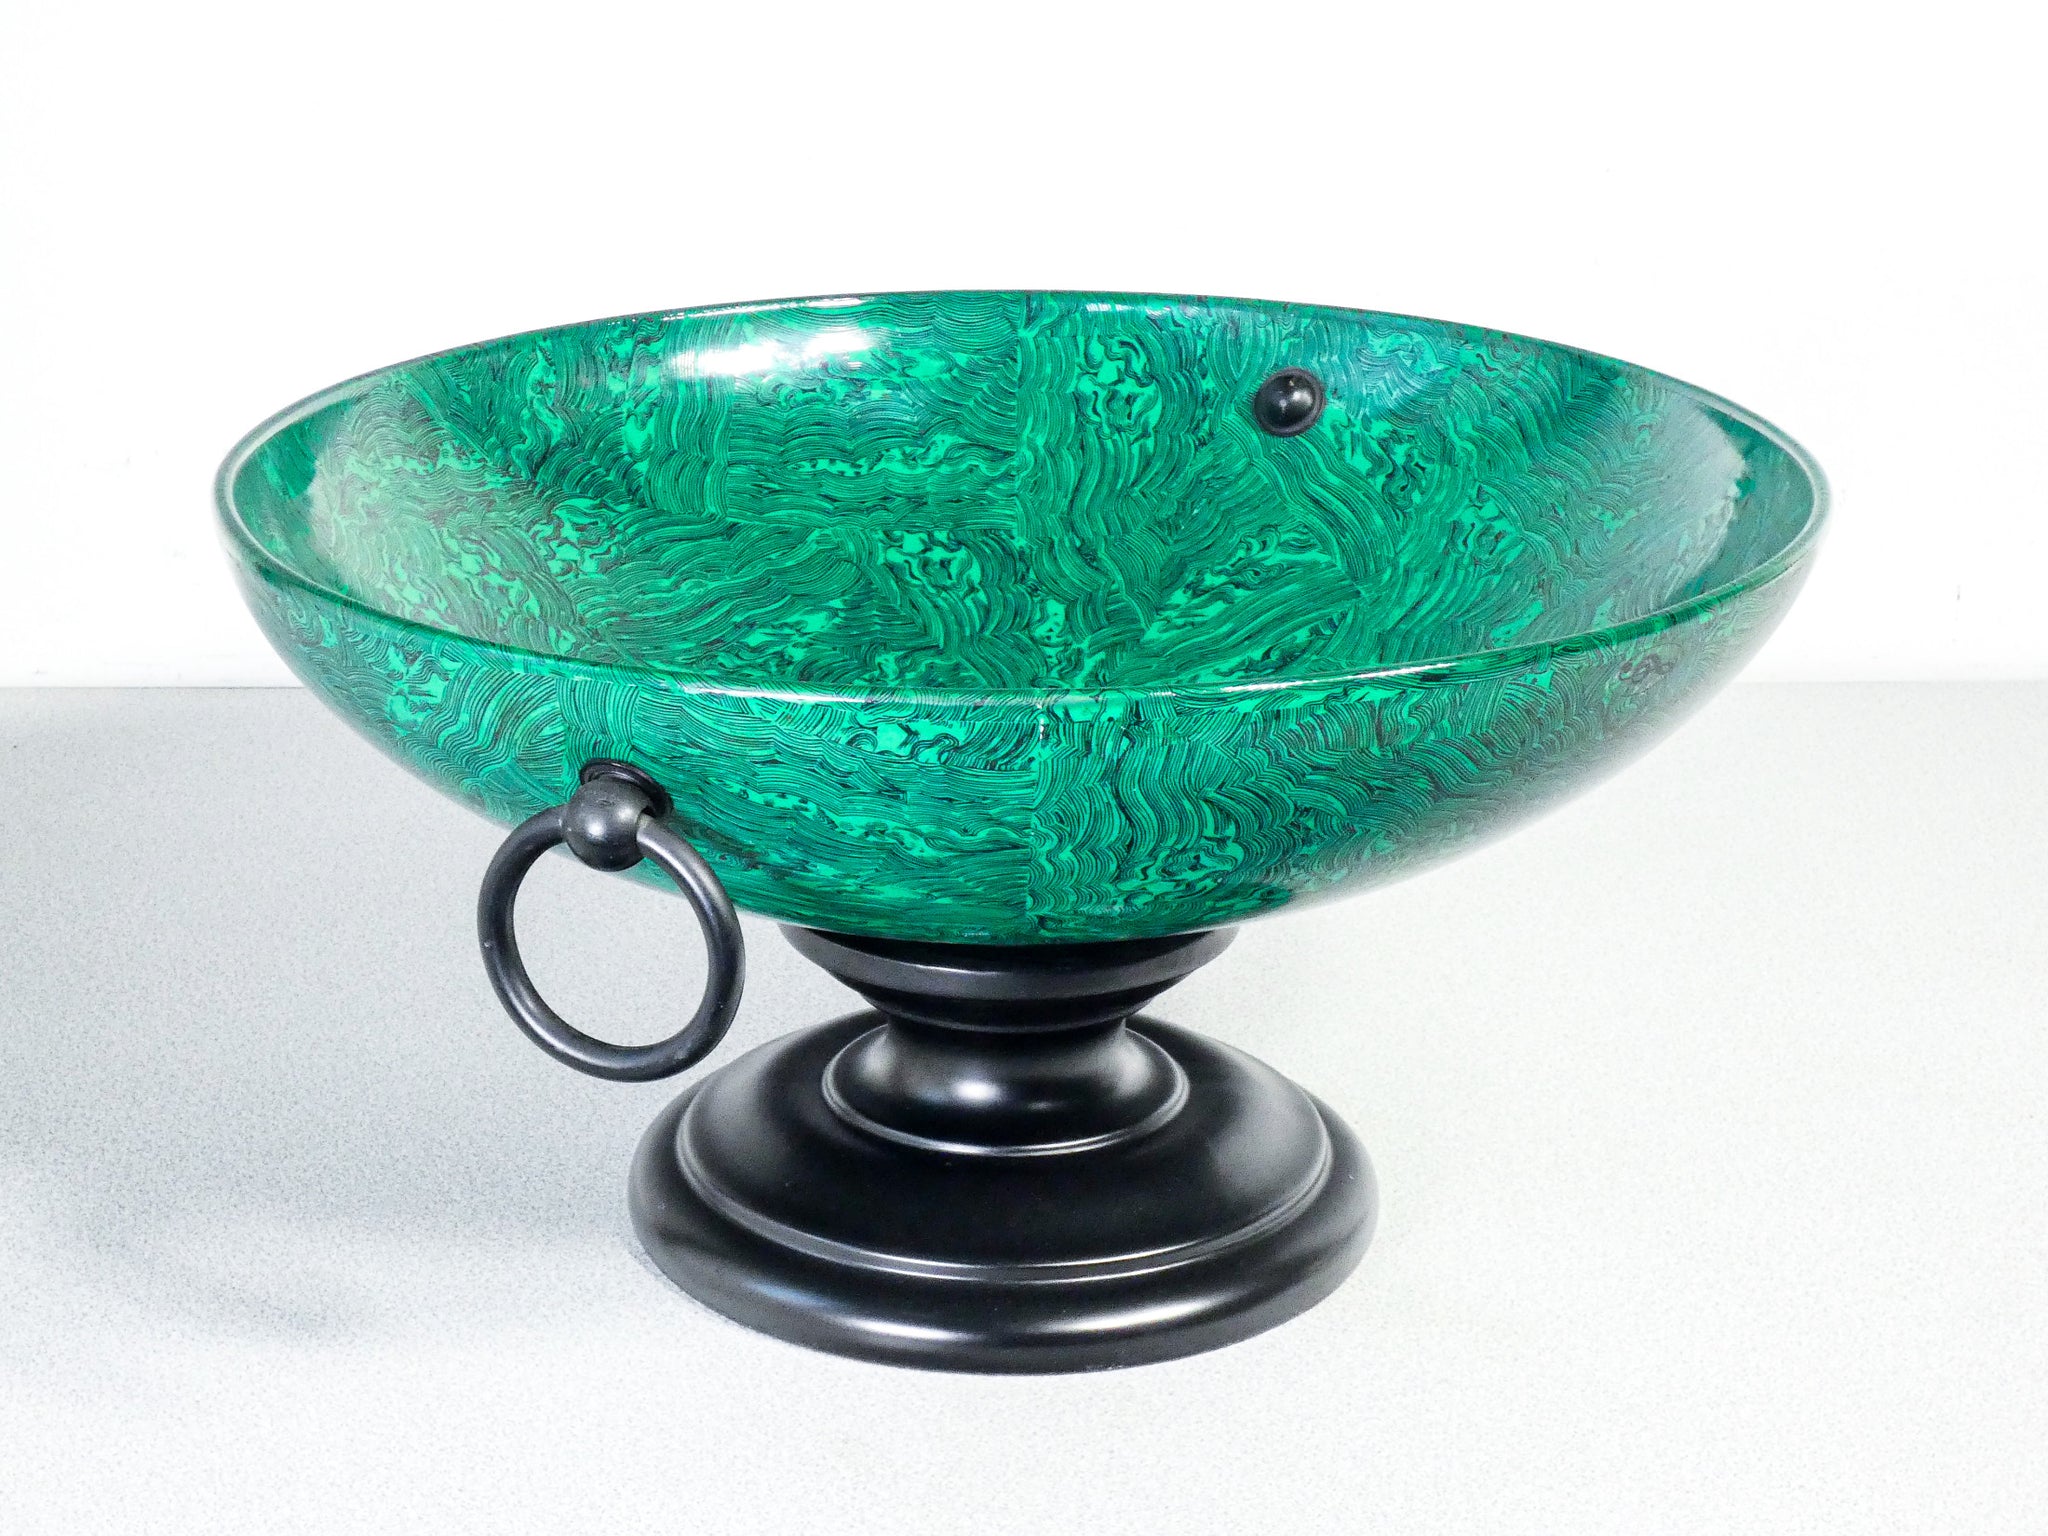 cachepot centrotavola ceramica mangani firenze porcellana verde smeraldo